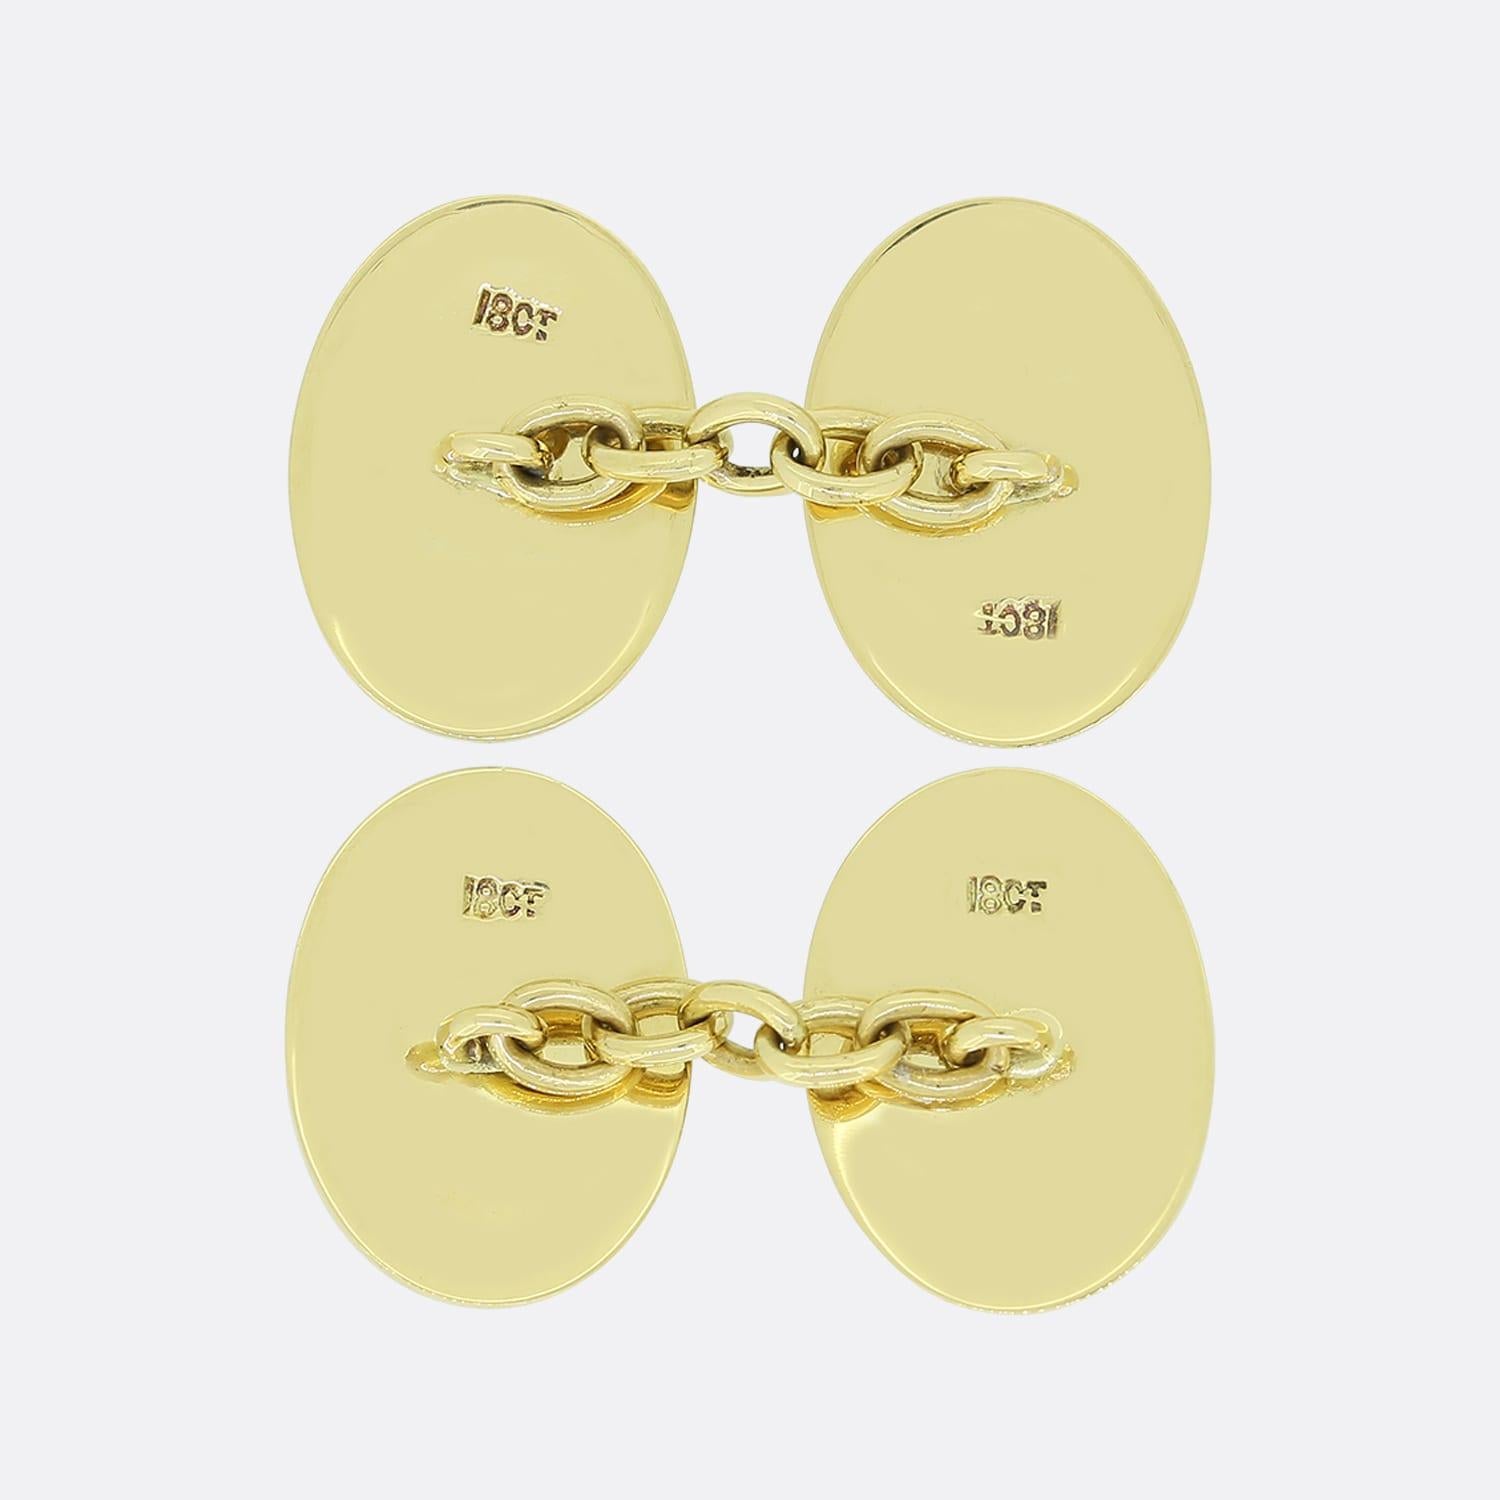 Il s'agit d'une belle paire de boutons de manchette vintage à maillons. Chaque face ovale est ornée d'une bordure en émail blanc et a été réalisée en or jaune 18ct.

Condit : Utilisé (Très bon)
Poids : 9,4 grammes
Dimensions de la face : 18mm x